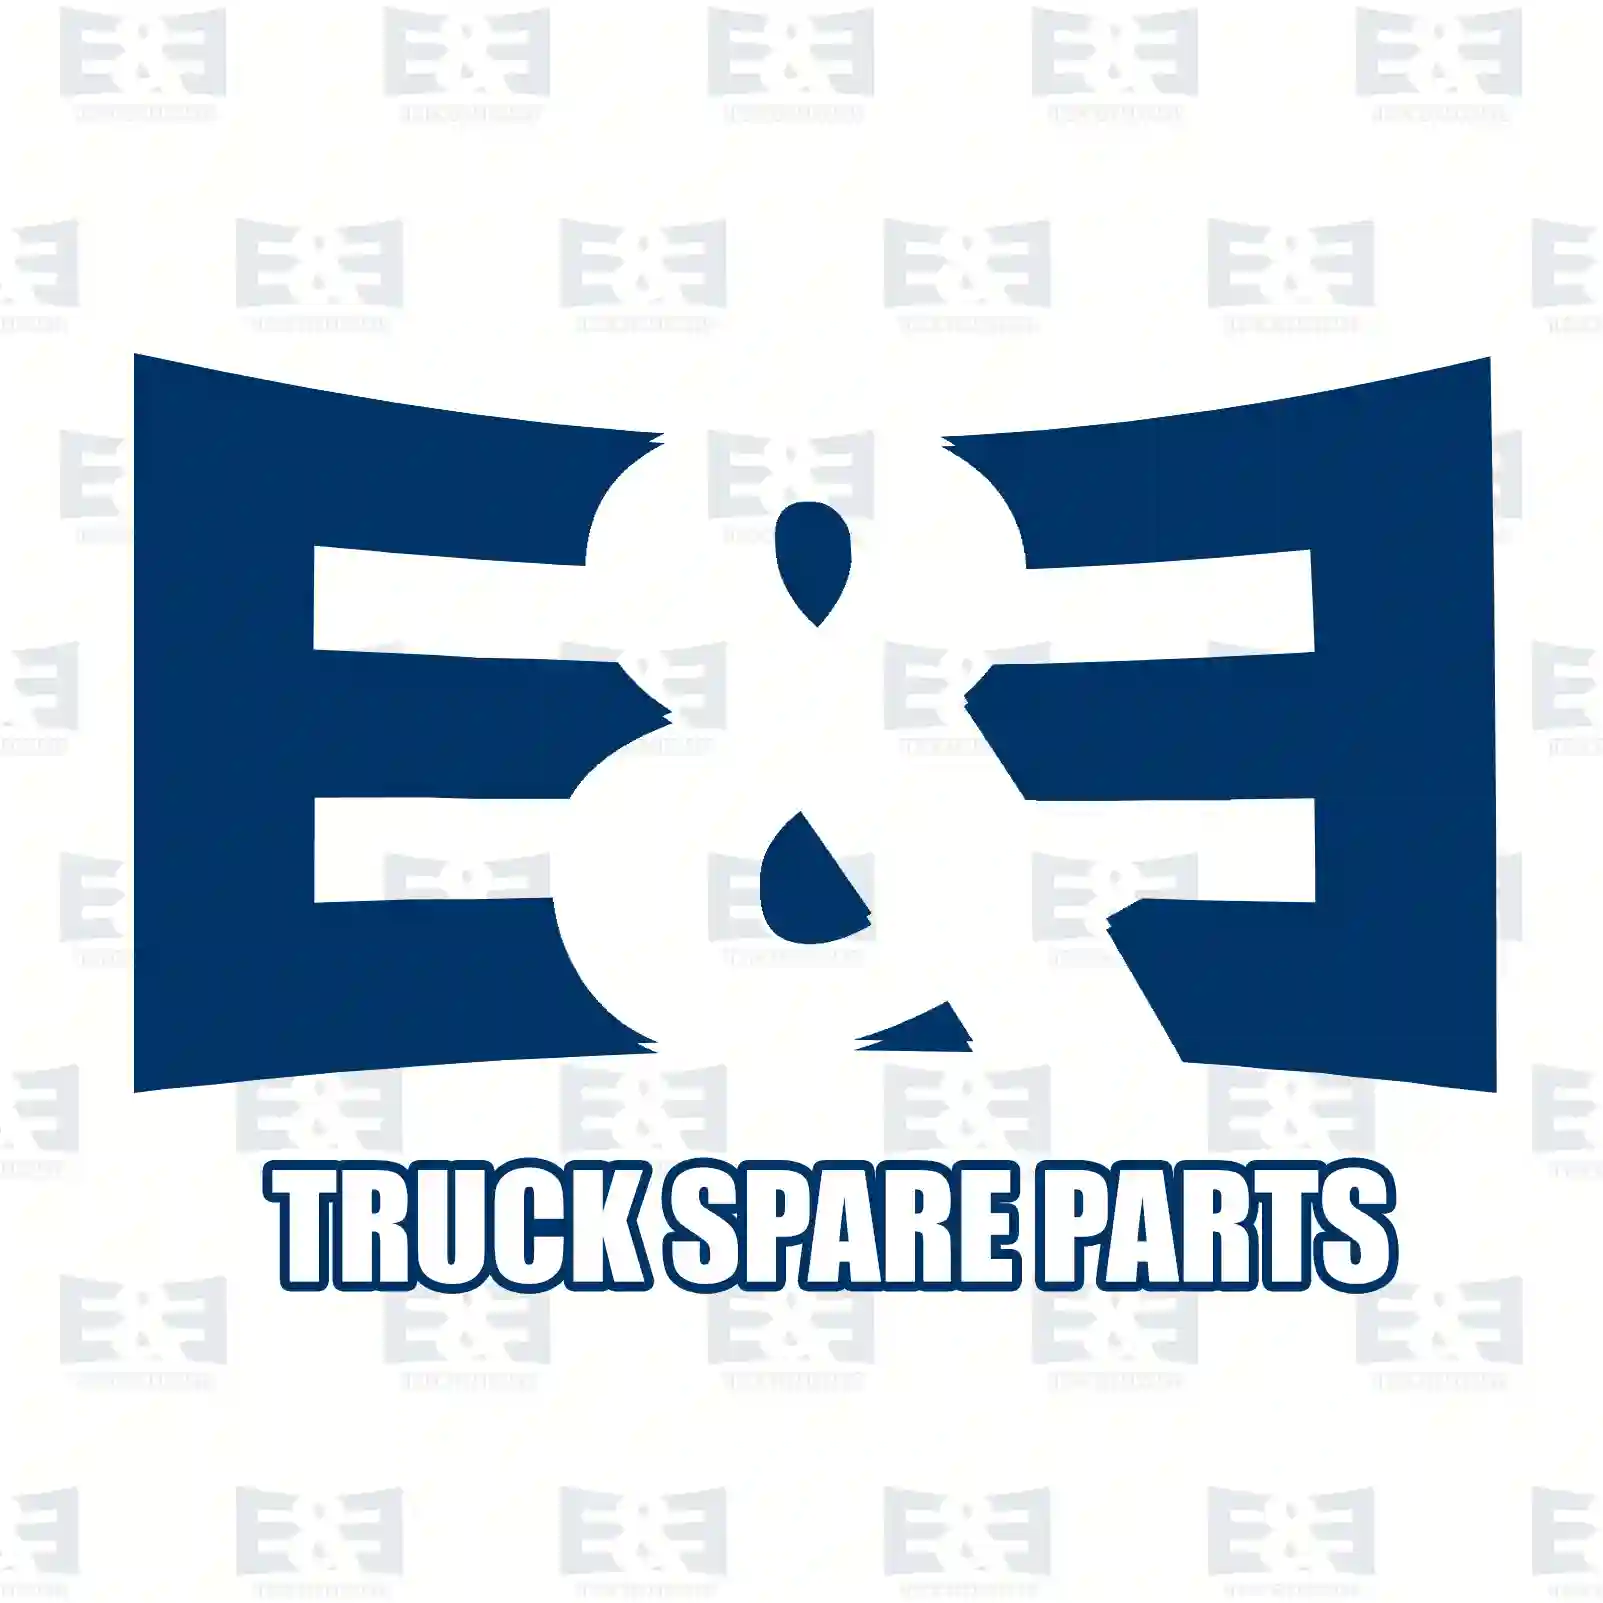 Brake caliper, right, 2E2297269, 42535600, 42536633, 42548184 ||  2E2297269 E&E Truck Spare Parts | Truck Spare Parts, Auotomotive Spare Parts Brake caliper, right, 2E2297269, 42535600, 42536633, 42548184 ||  2E2297269 E&E Truck Spare Parts | Truck Spare Parts, Auotomotive Spare Parts